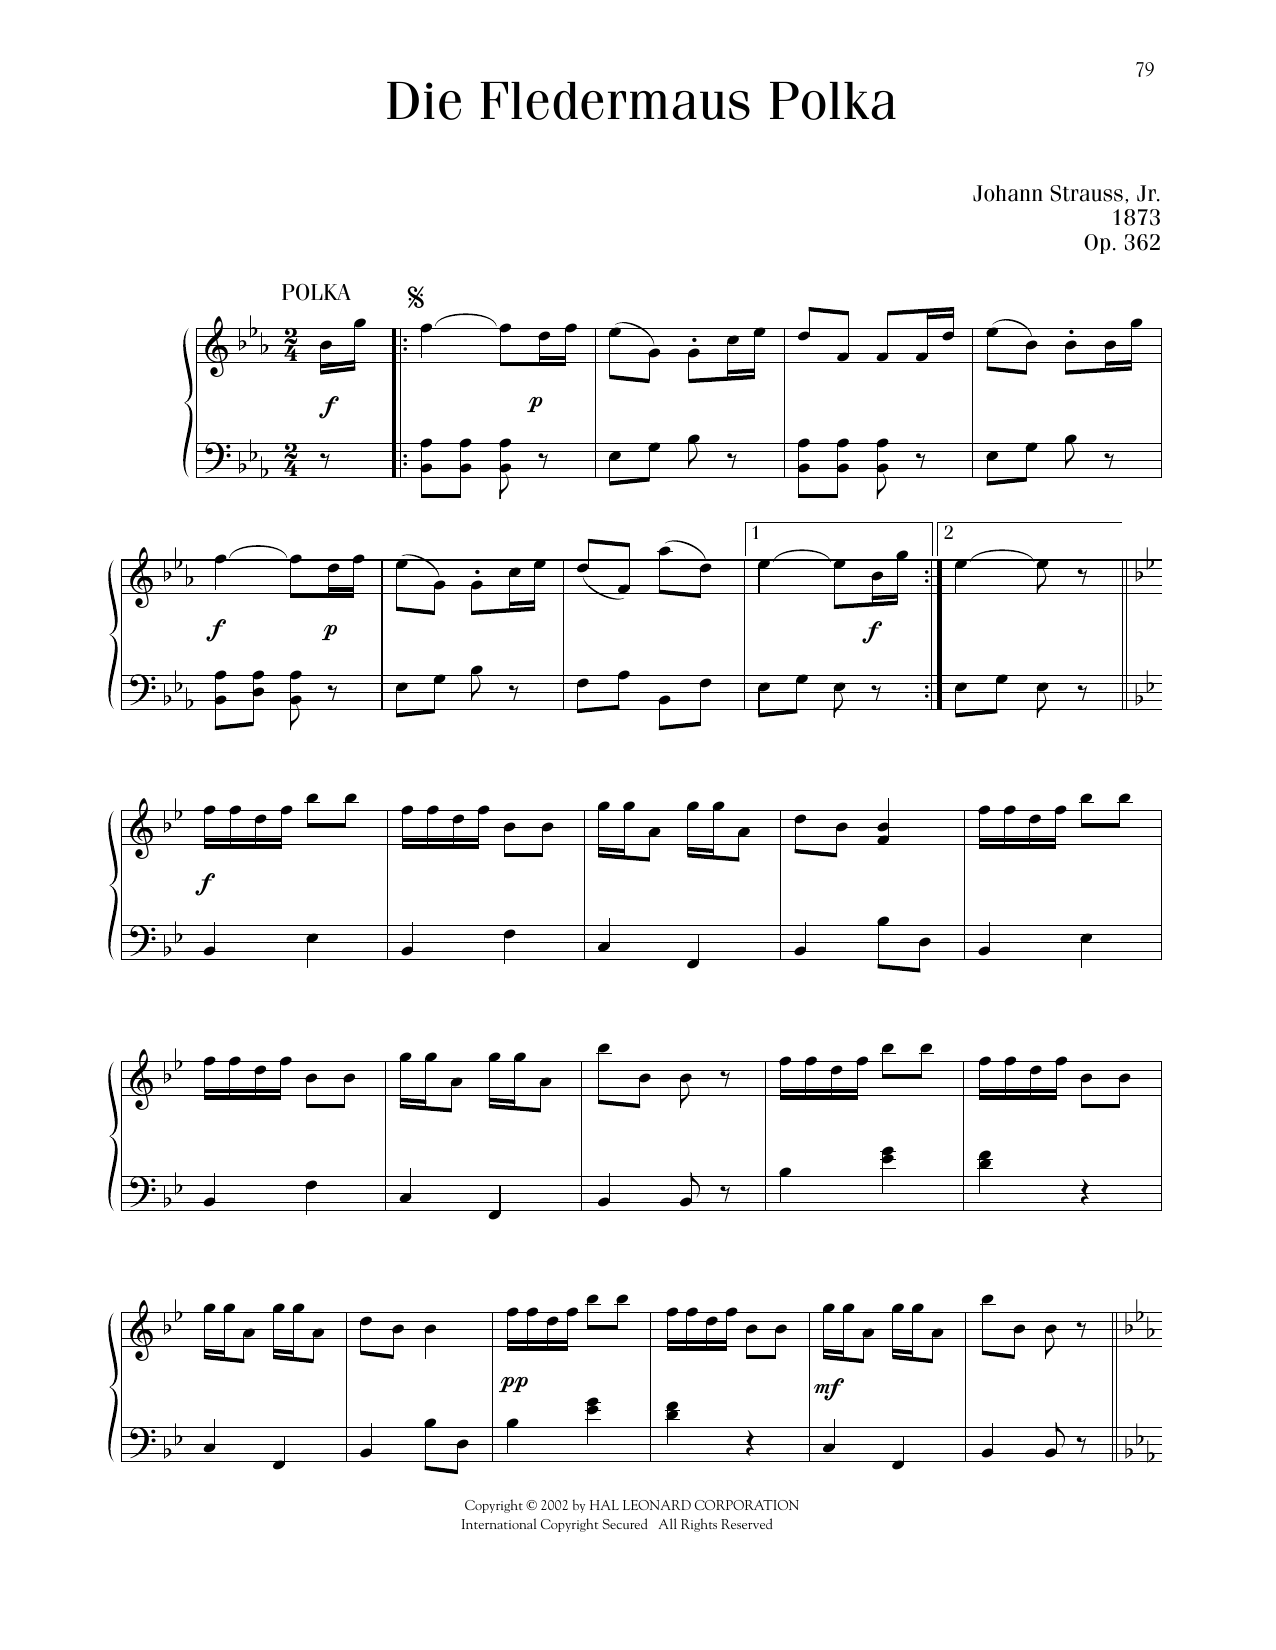 Johann Strauss Die Fledermaus Polka, Op. 362 sheet music notes printable PDF score